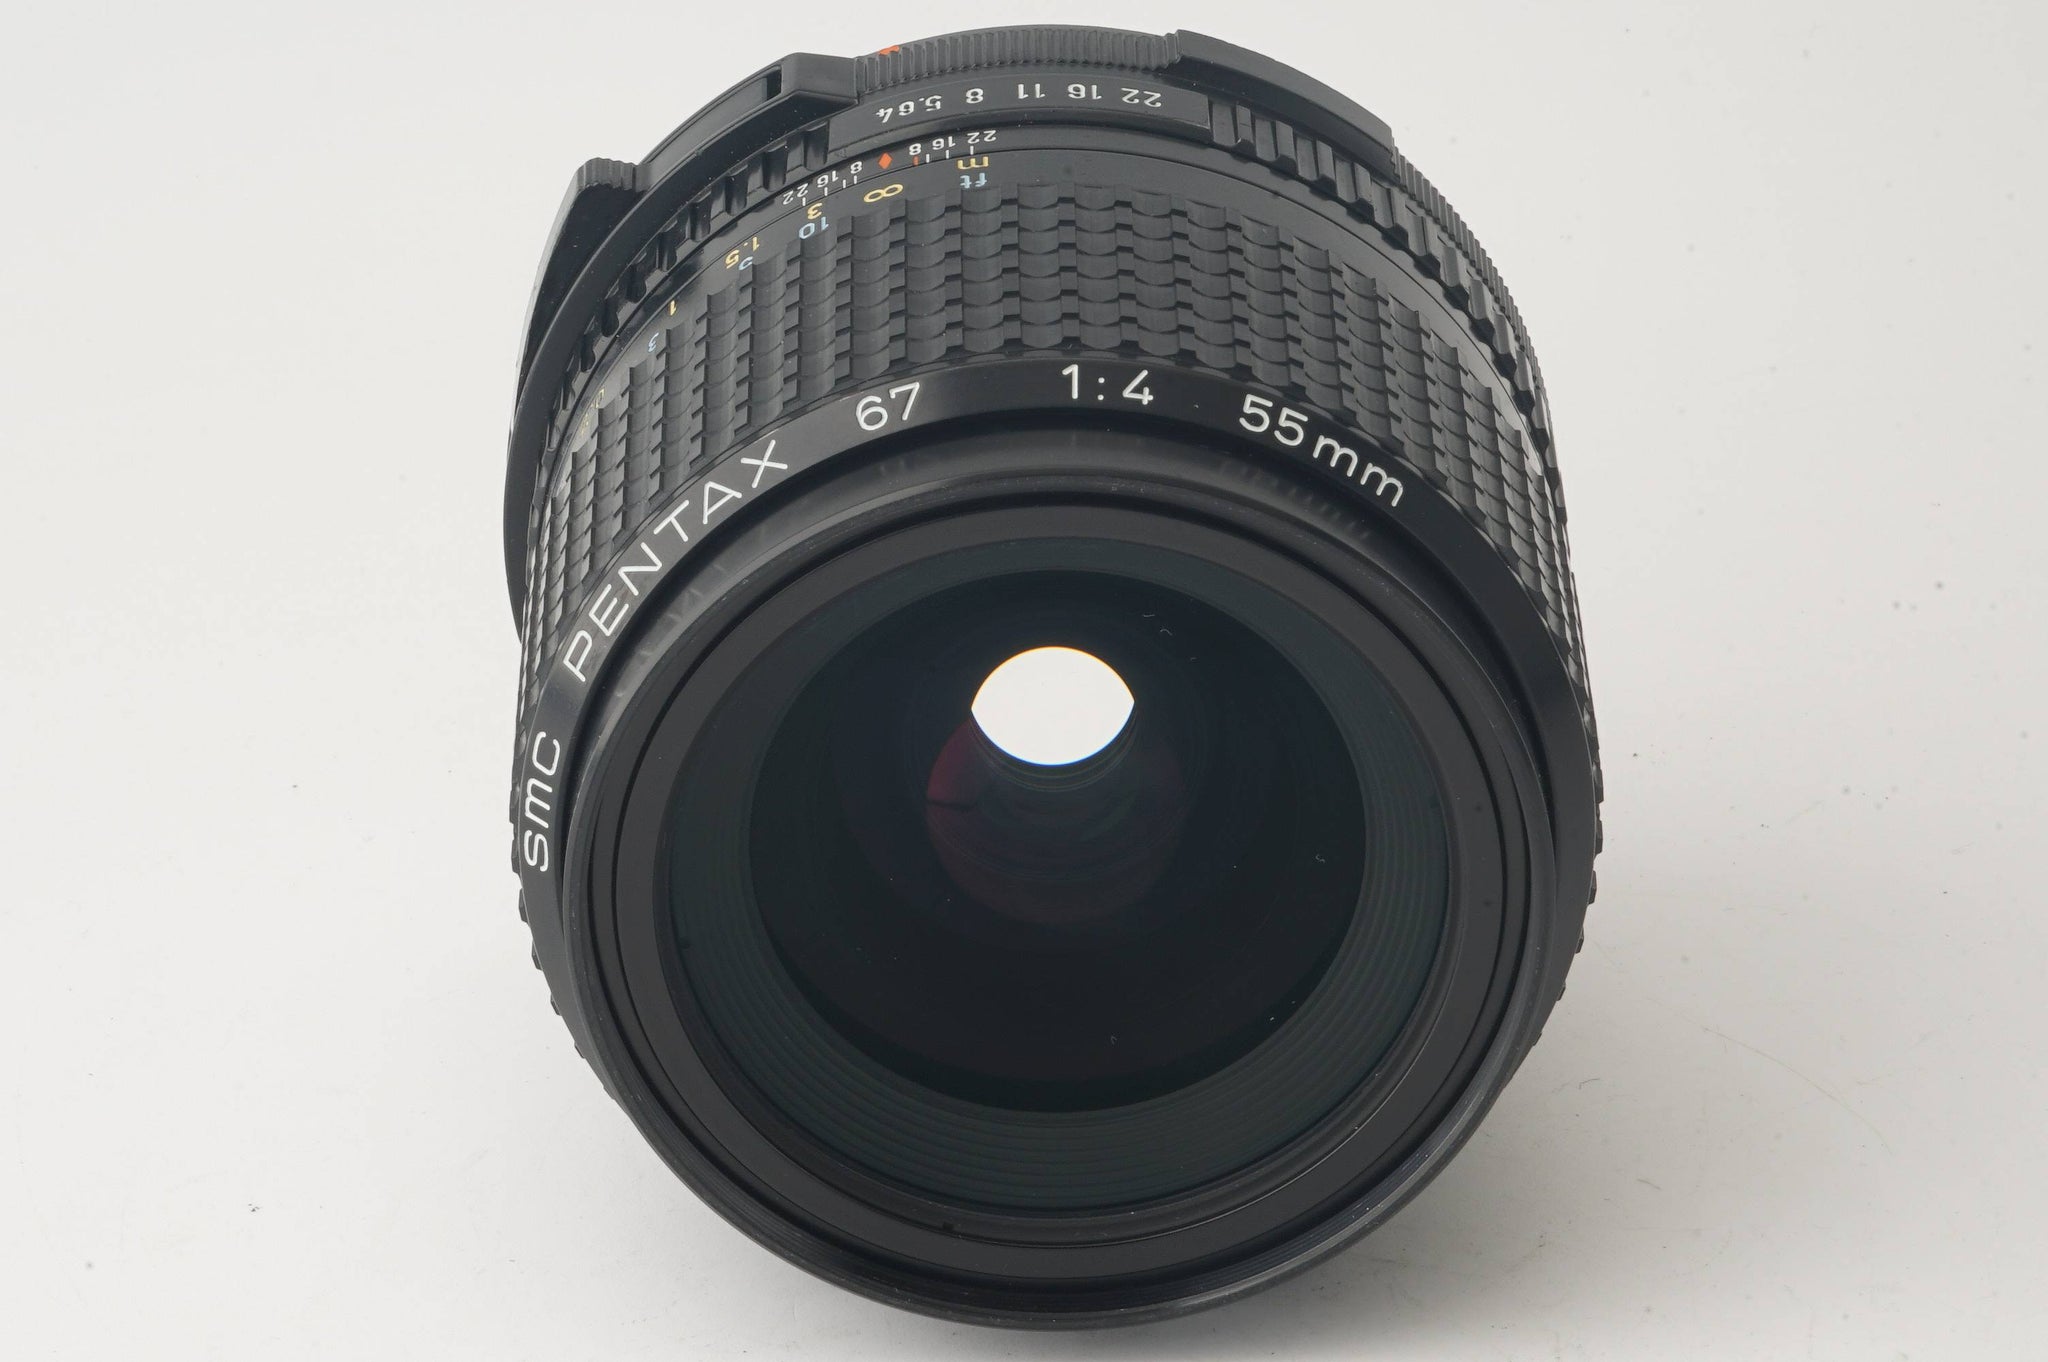 ペンタックス Pentax SMC PENTAX 67 55mm F4 箱付き – Natural Camera